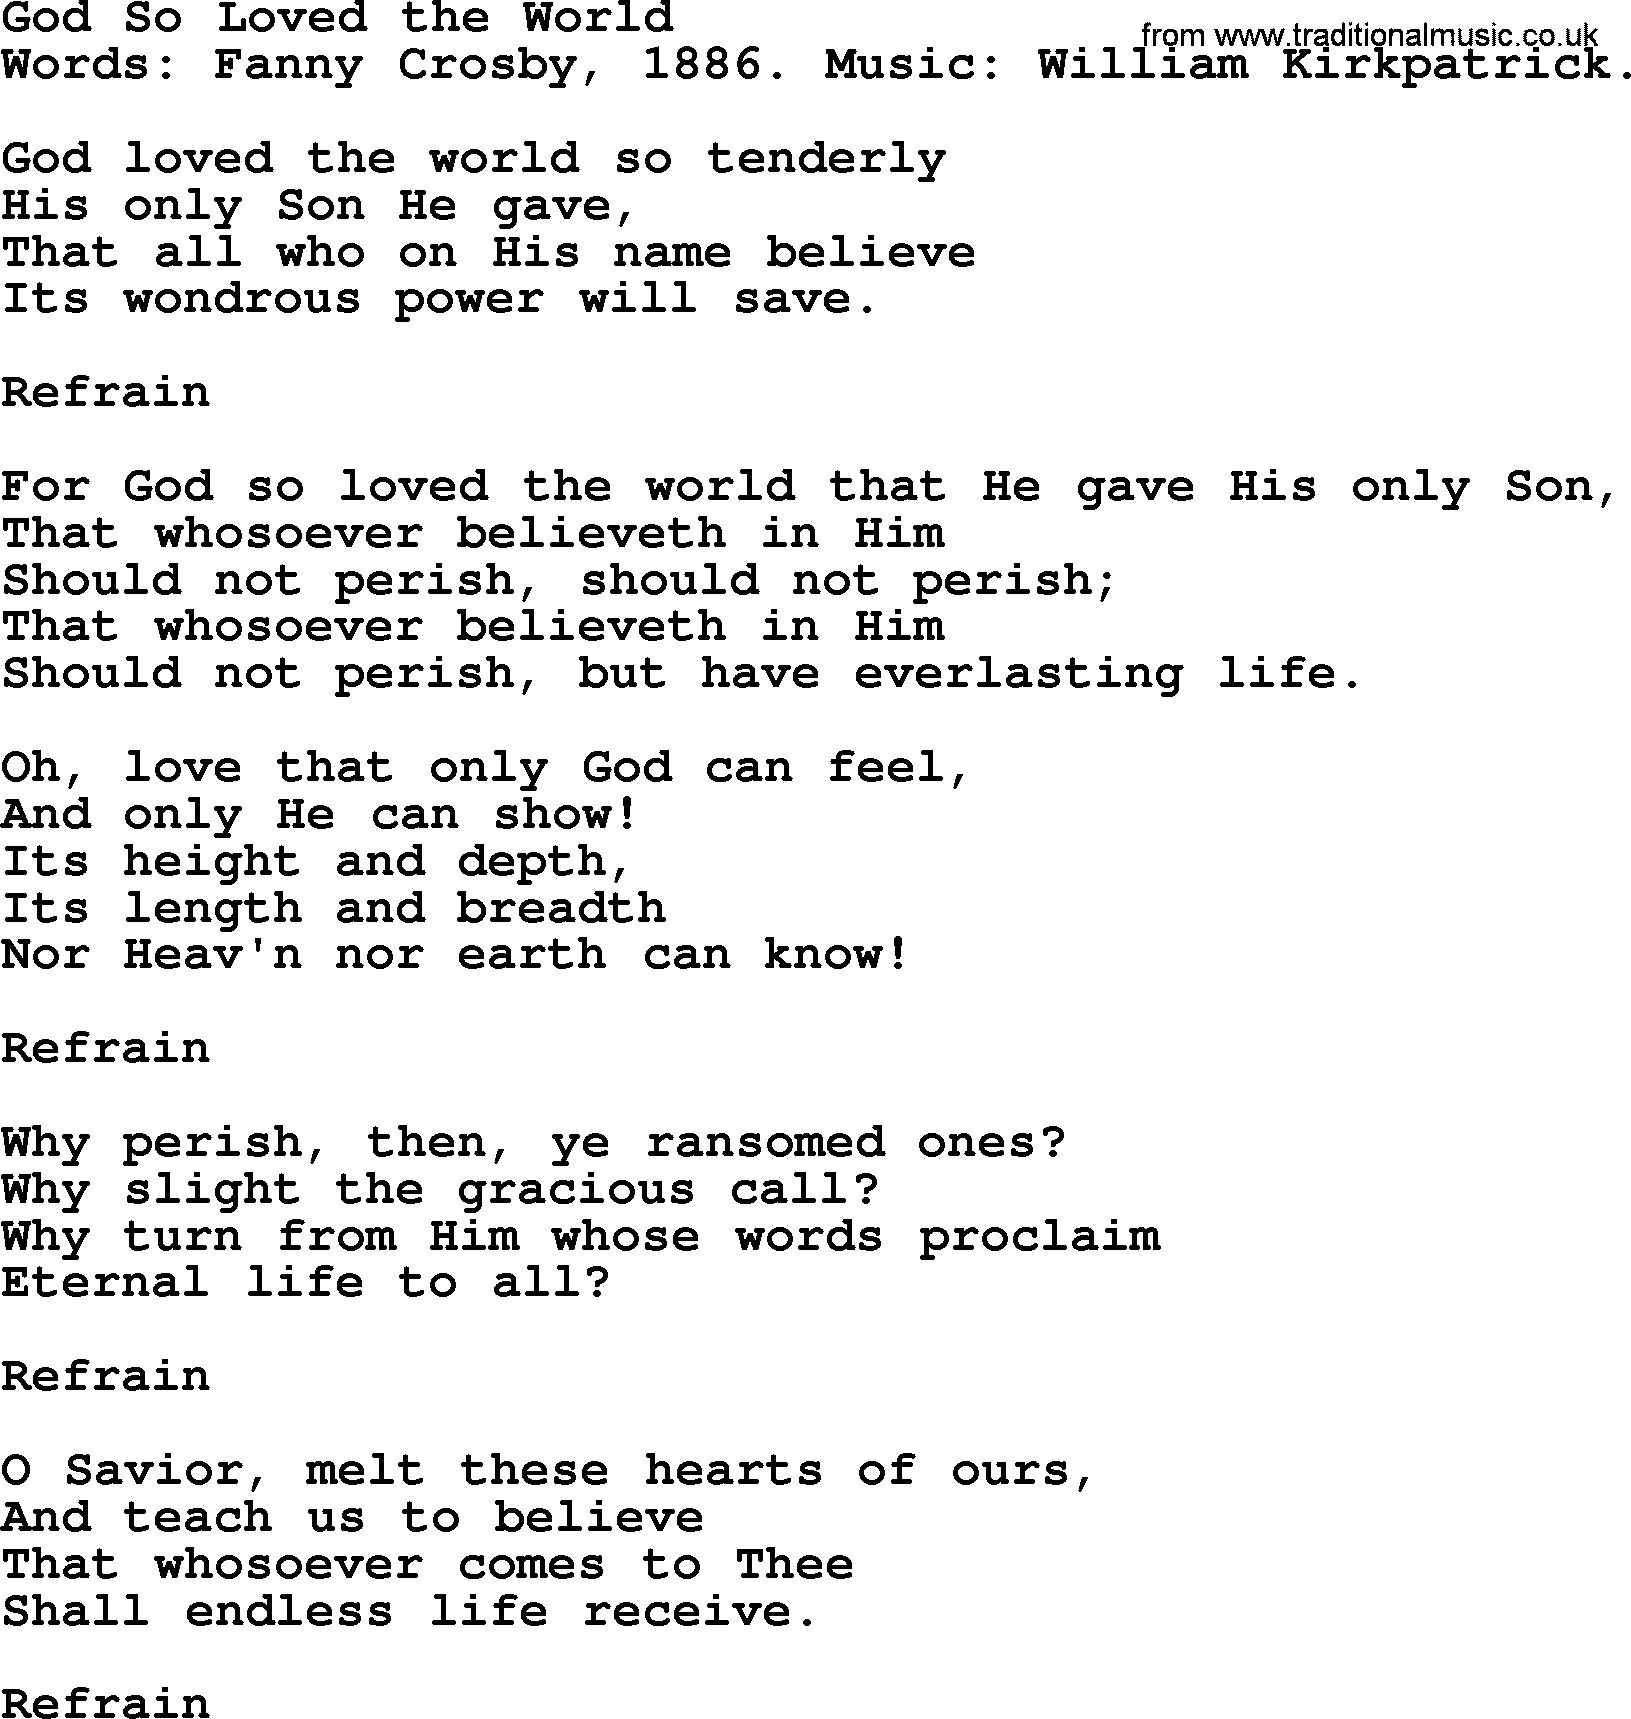 Fanny Crosby song: God So Loved The World, lyrics